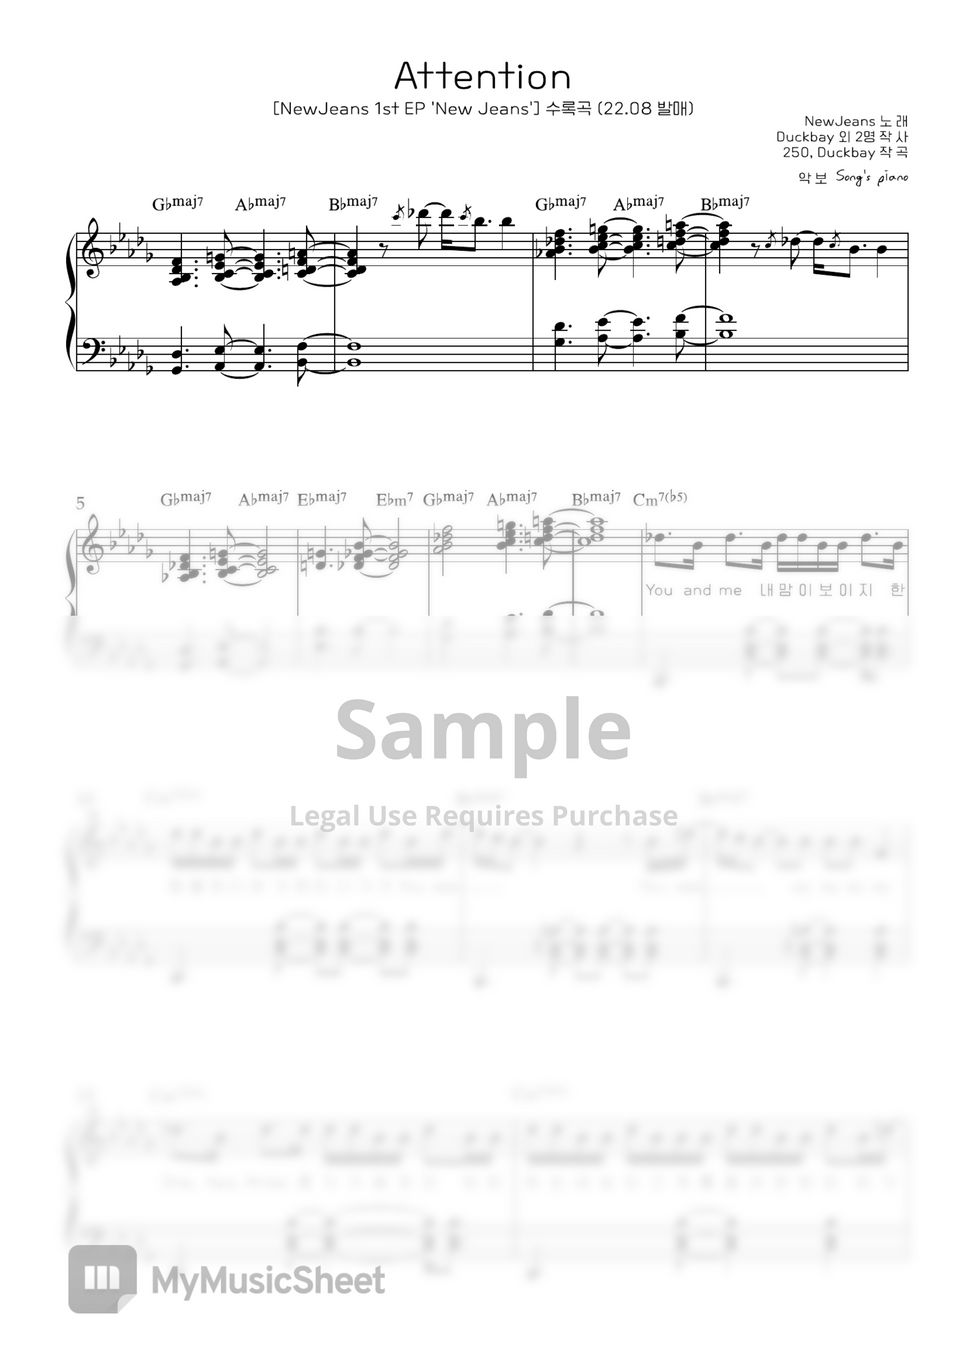 뉴진스 - Attention (피아노커버/원키, 쉬운키/ 멜로디연주/ 가사, 코드 포함) by song's piano